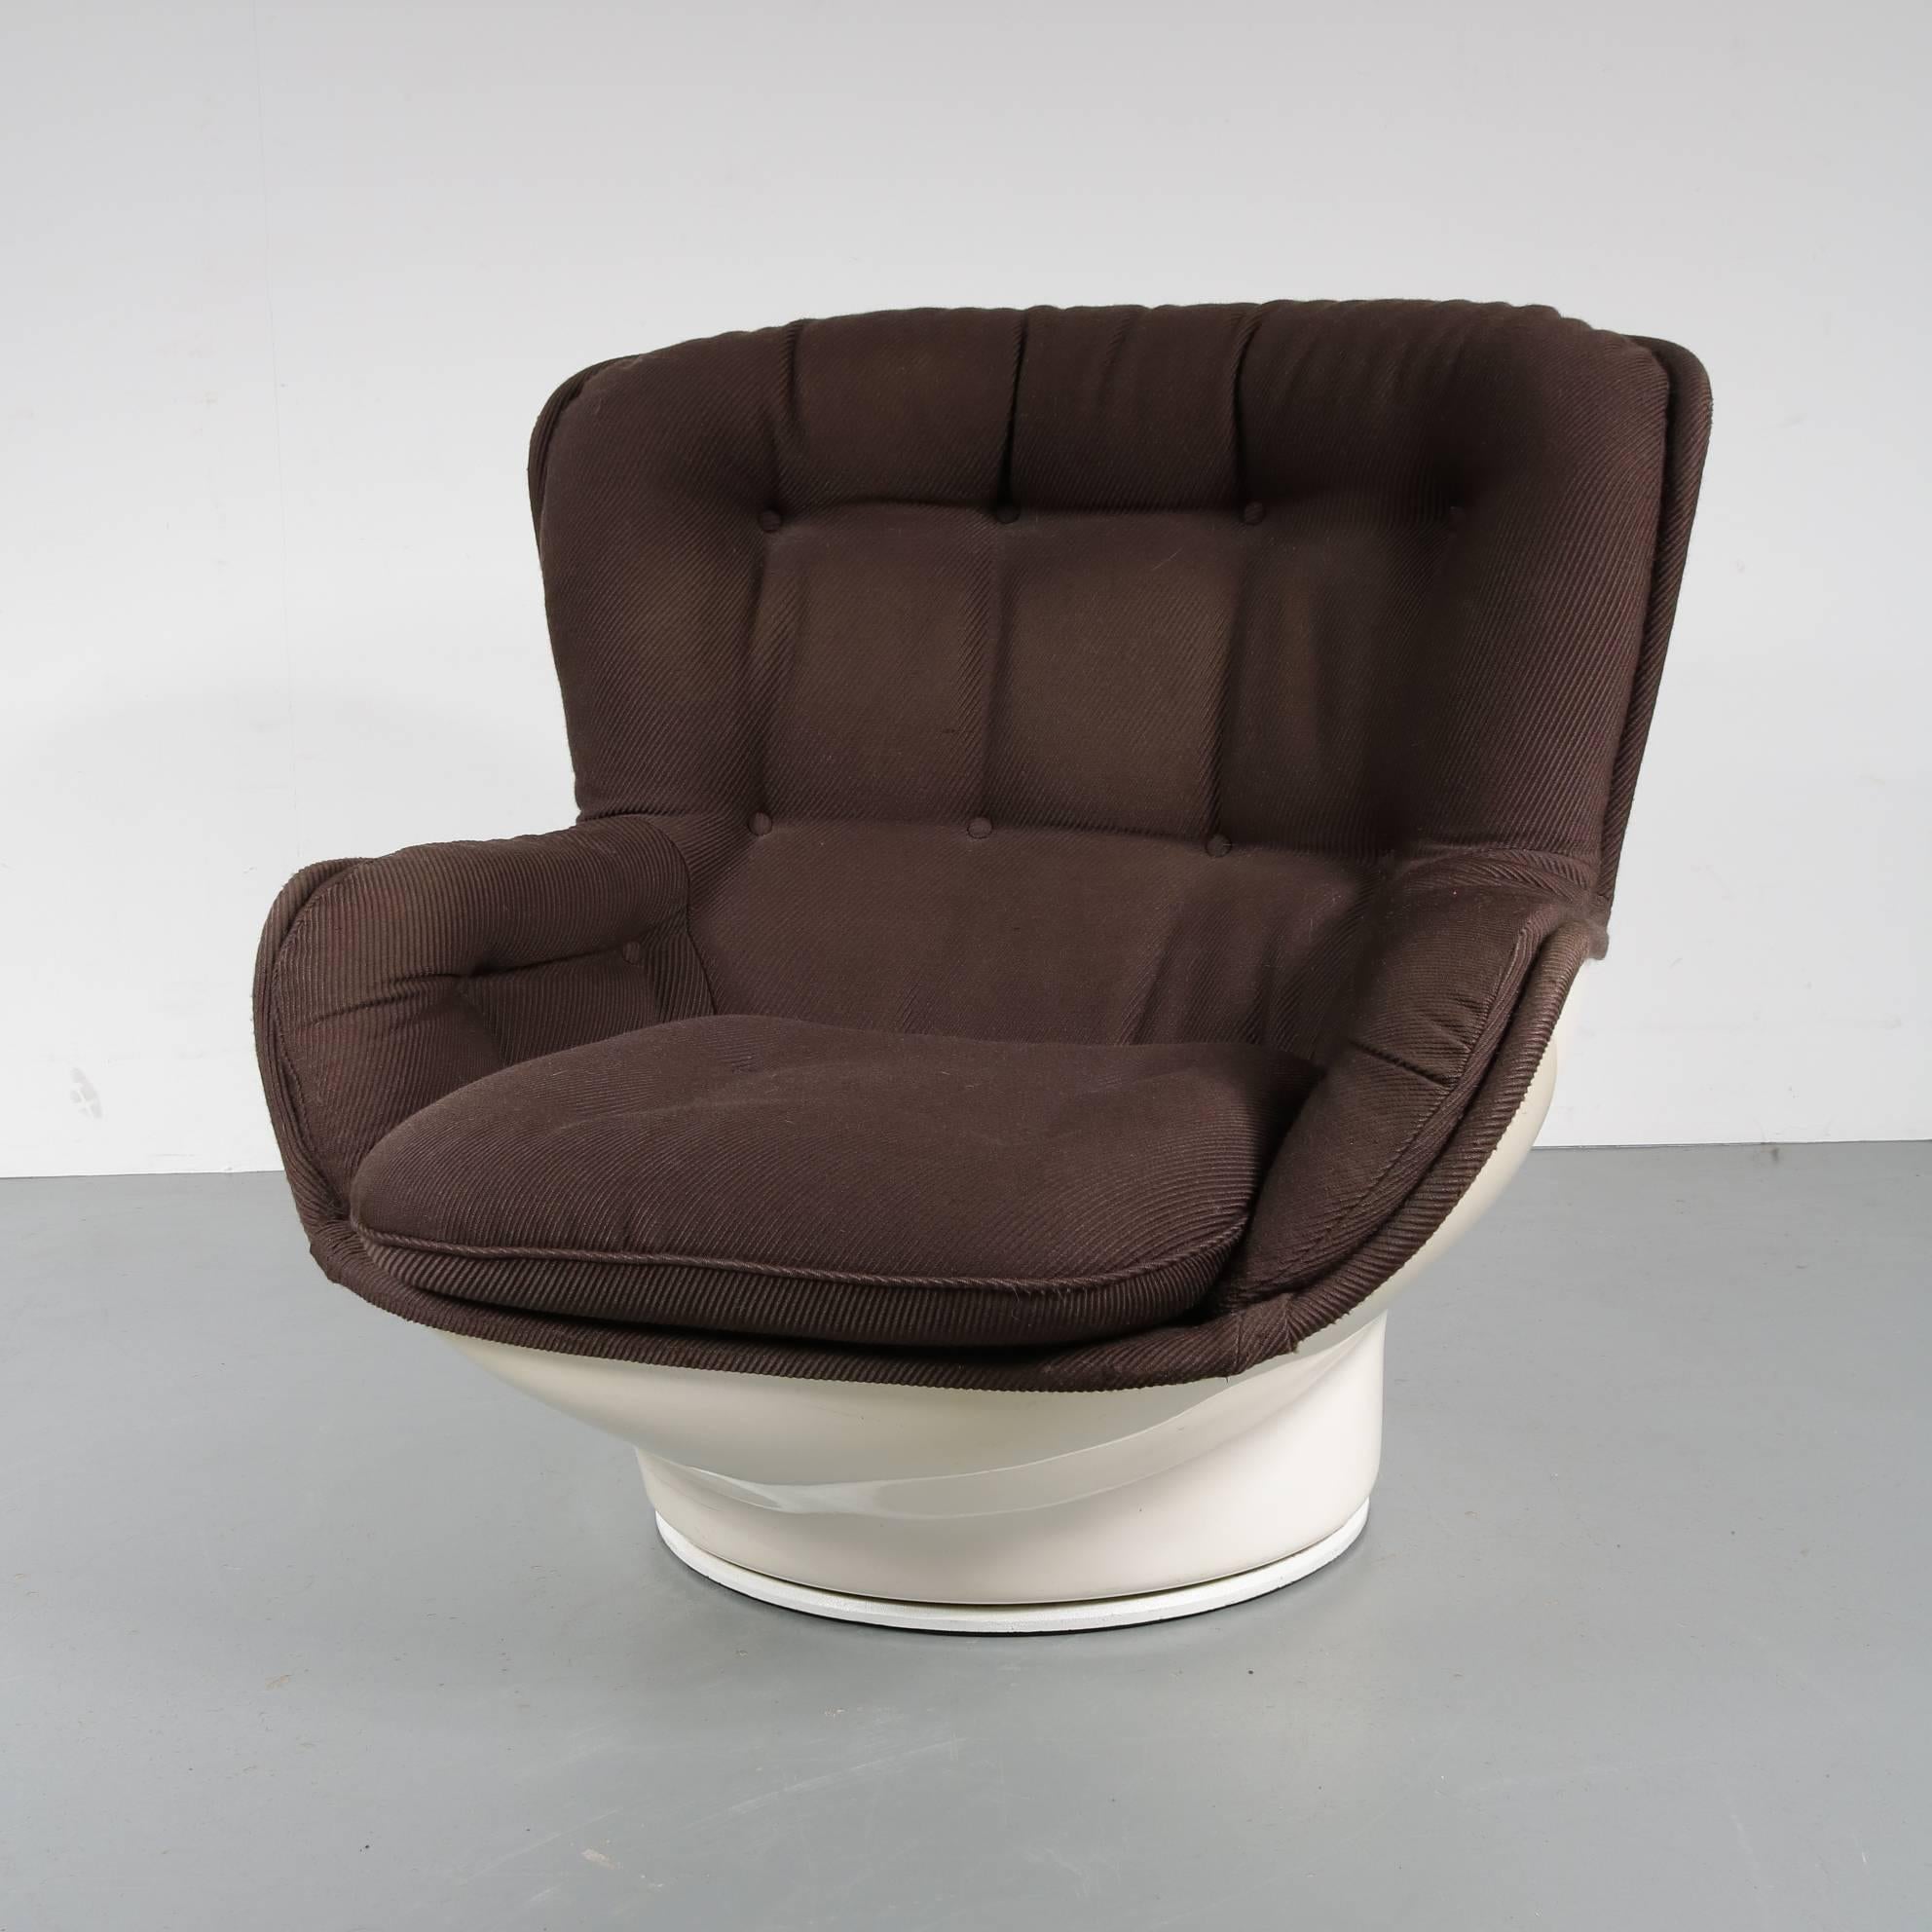 Une chaise Karate accrocheuse conçue par Michel Cadestin, fabriquée par Airborne en France vers 1970.

Cette chaise étonnante et rare est fabriquée en fibre de verre blanche de haute qualité avec le revêtement d'origine en velours côtelé brun.